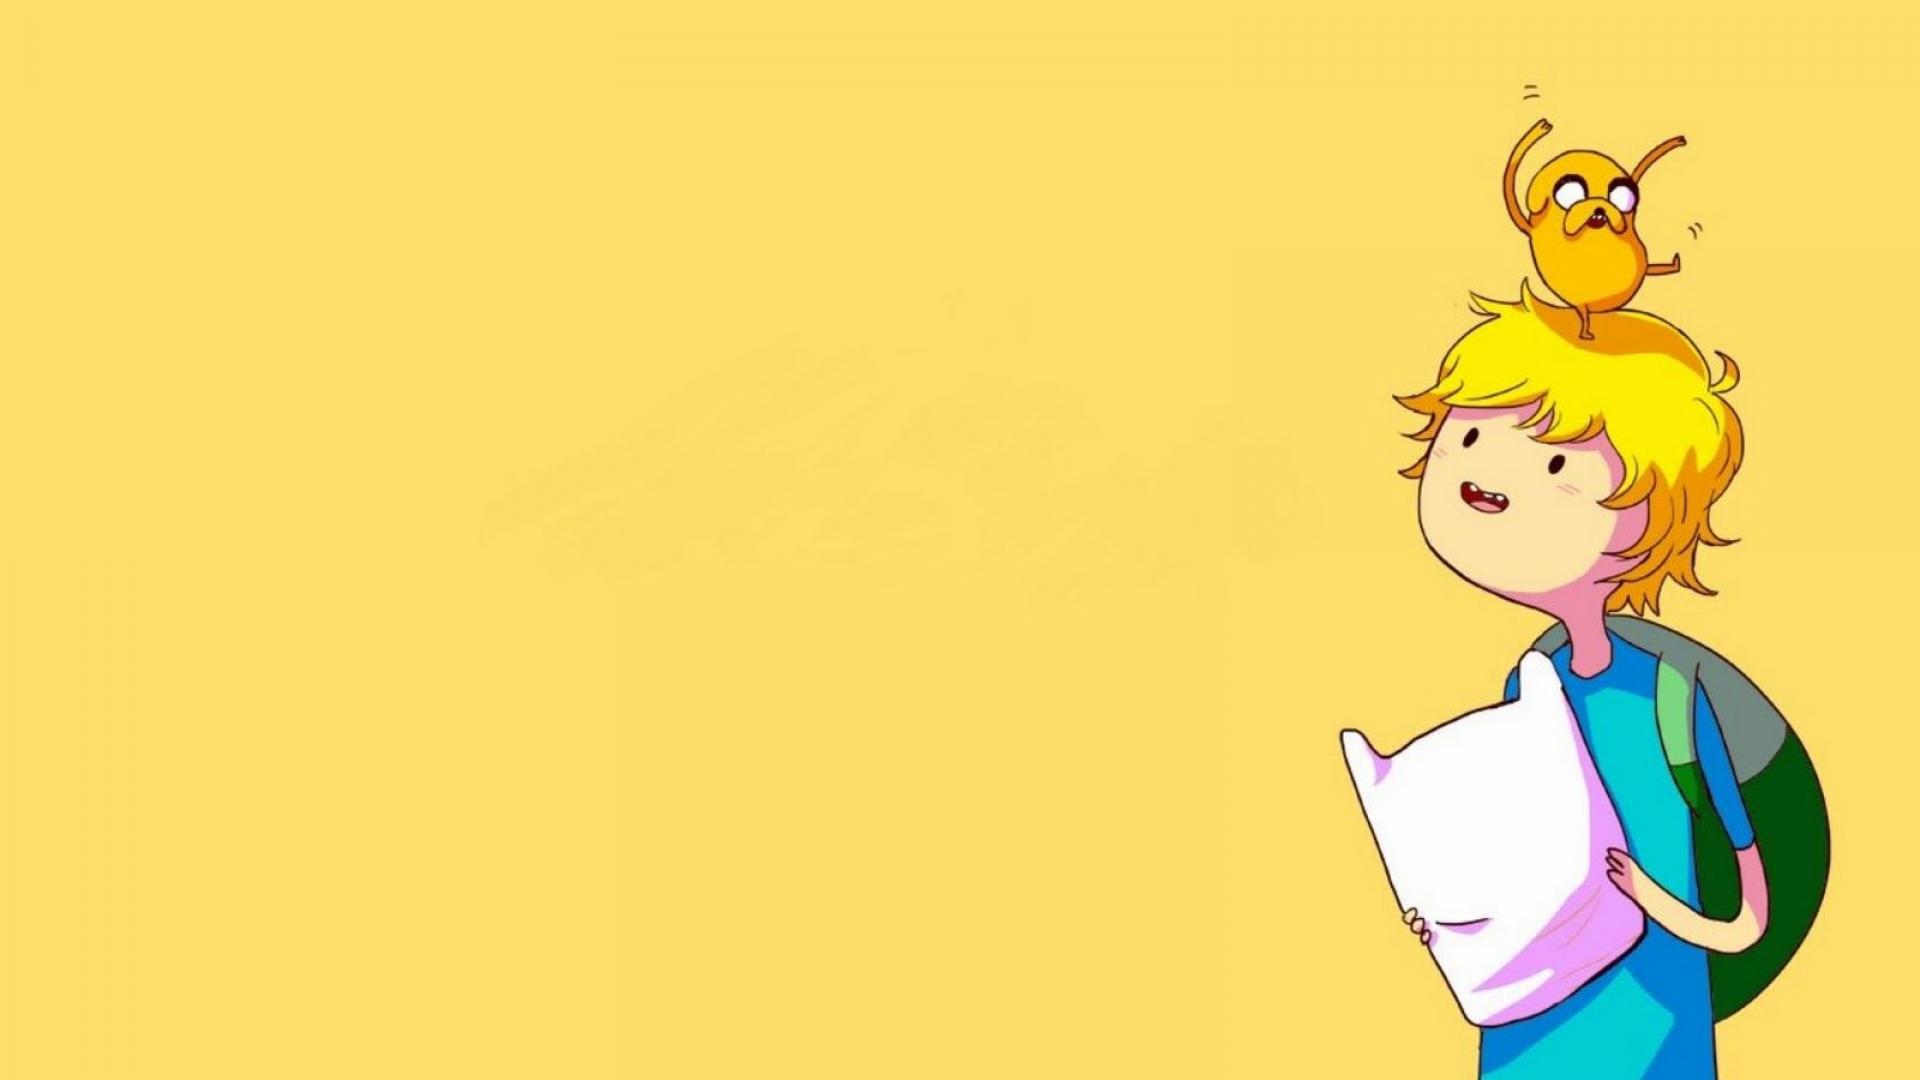 Adventure Time Desktop Wallpaper - Wallpaper, High Definition, High  Quality, Widescreen